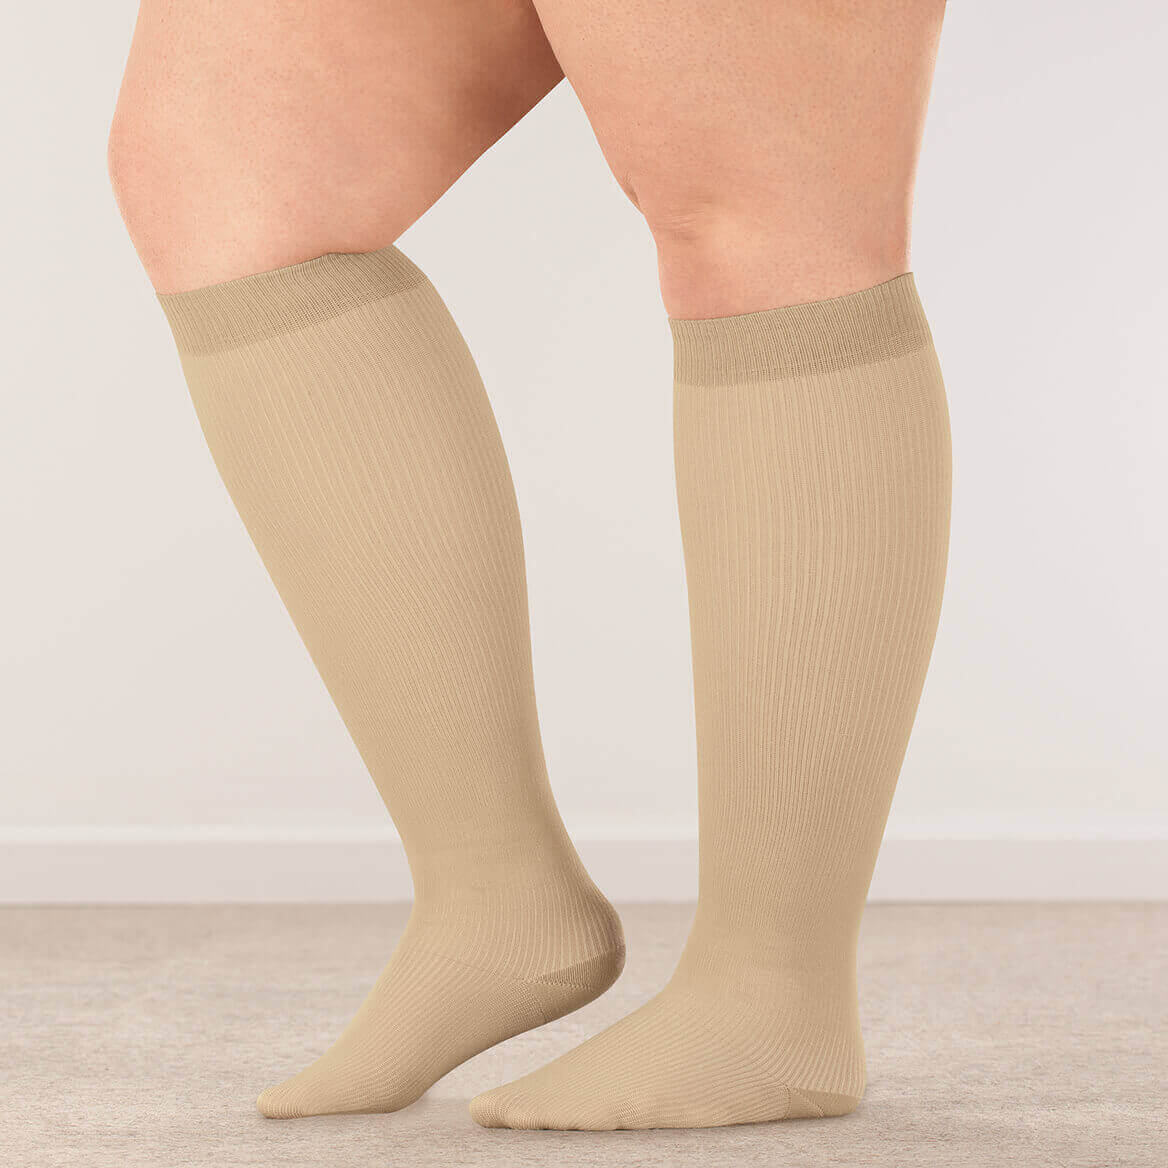 compression socks after dvt 2